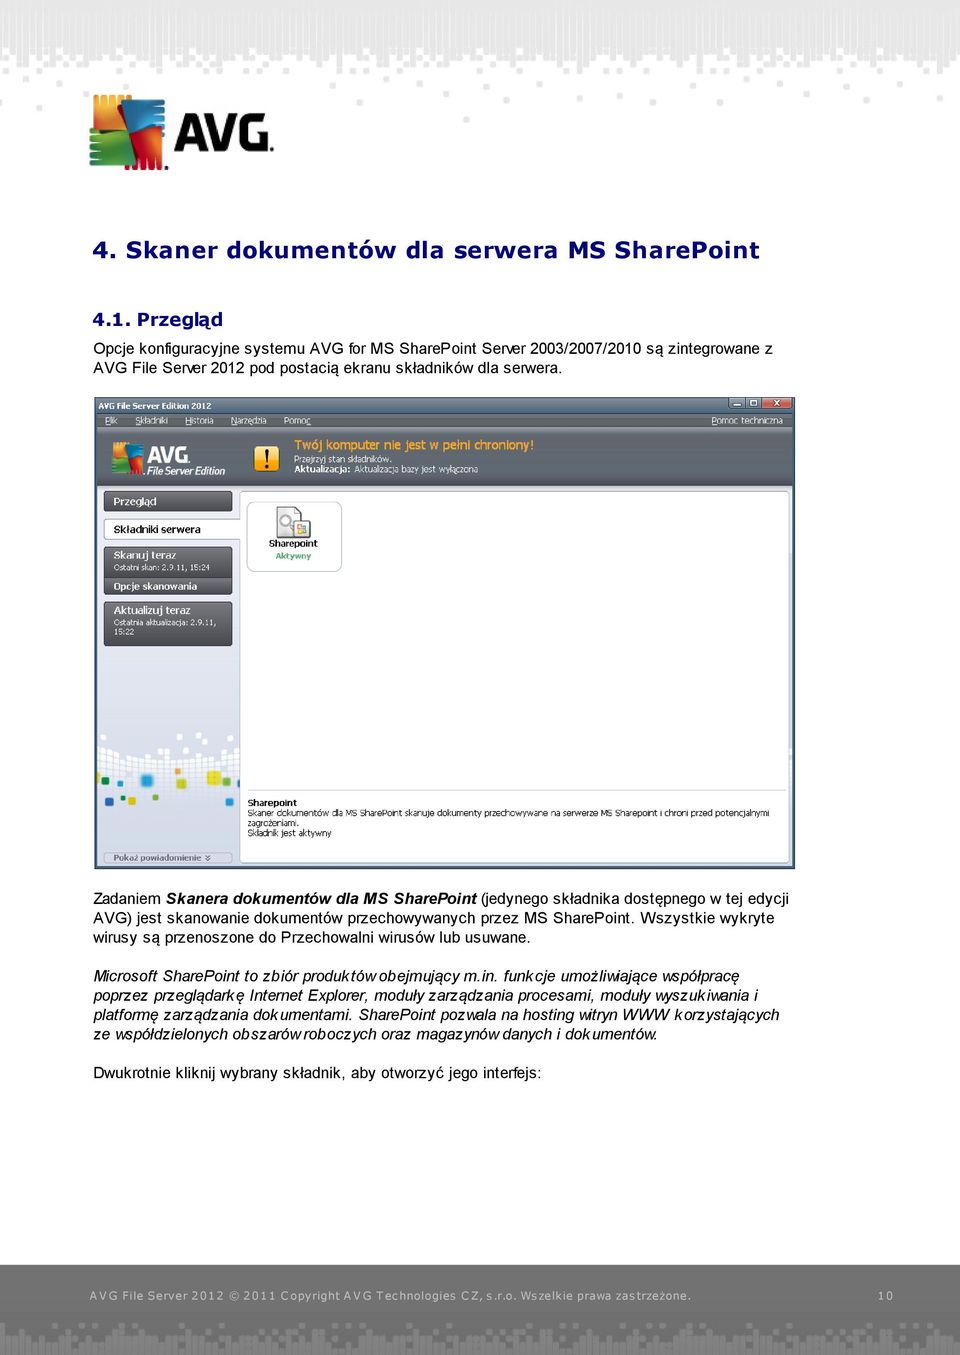 Zadaniem Skanera dokumentów dla MS SharePoint (jedynego składnika dostępnego w tej edycji AVG) jest skanowanie dokumentów przechowywanych przez MS SharePoint.